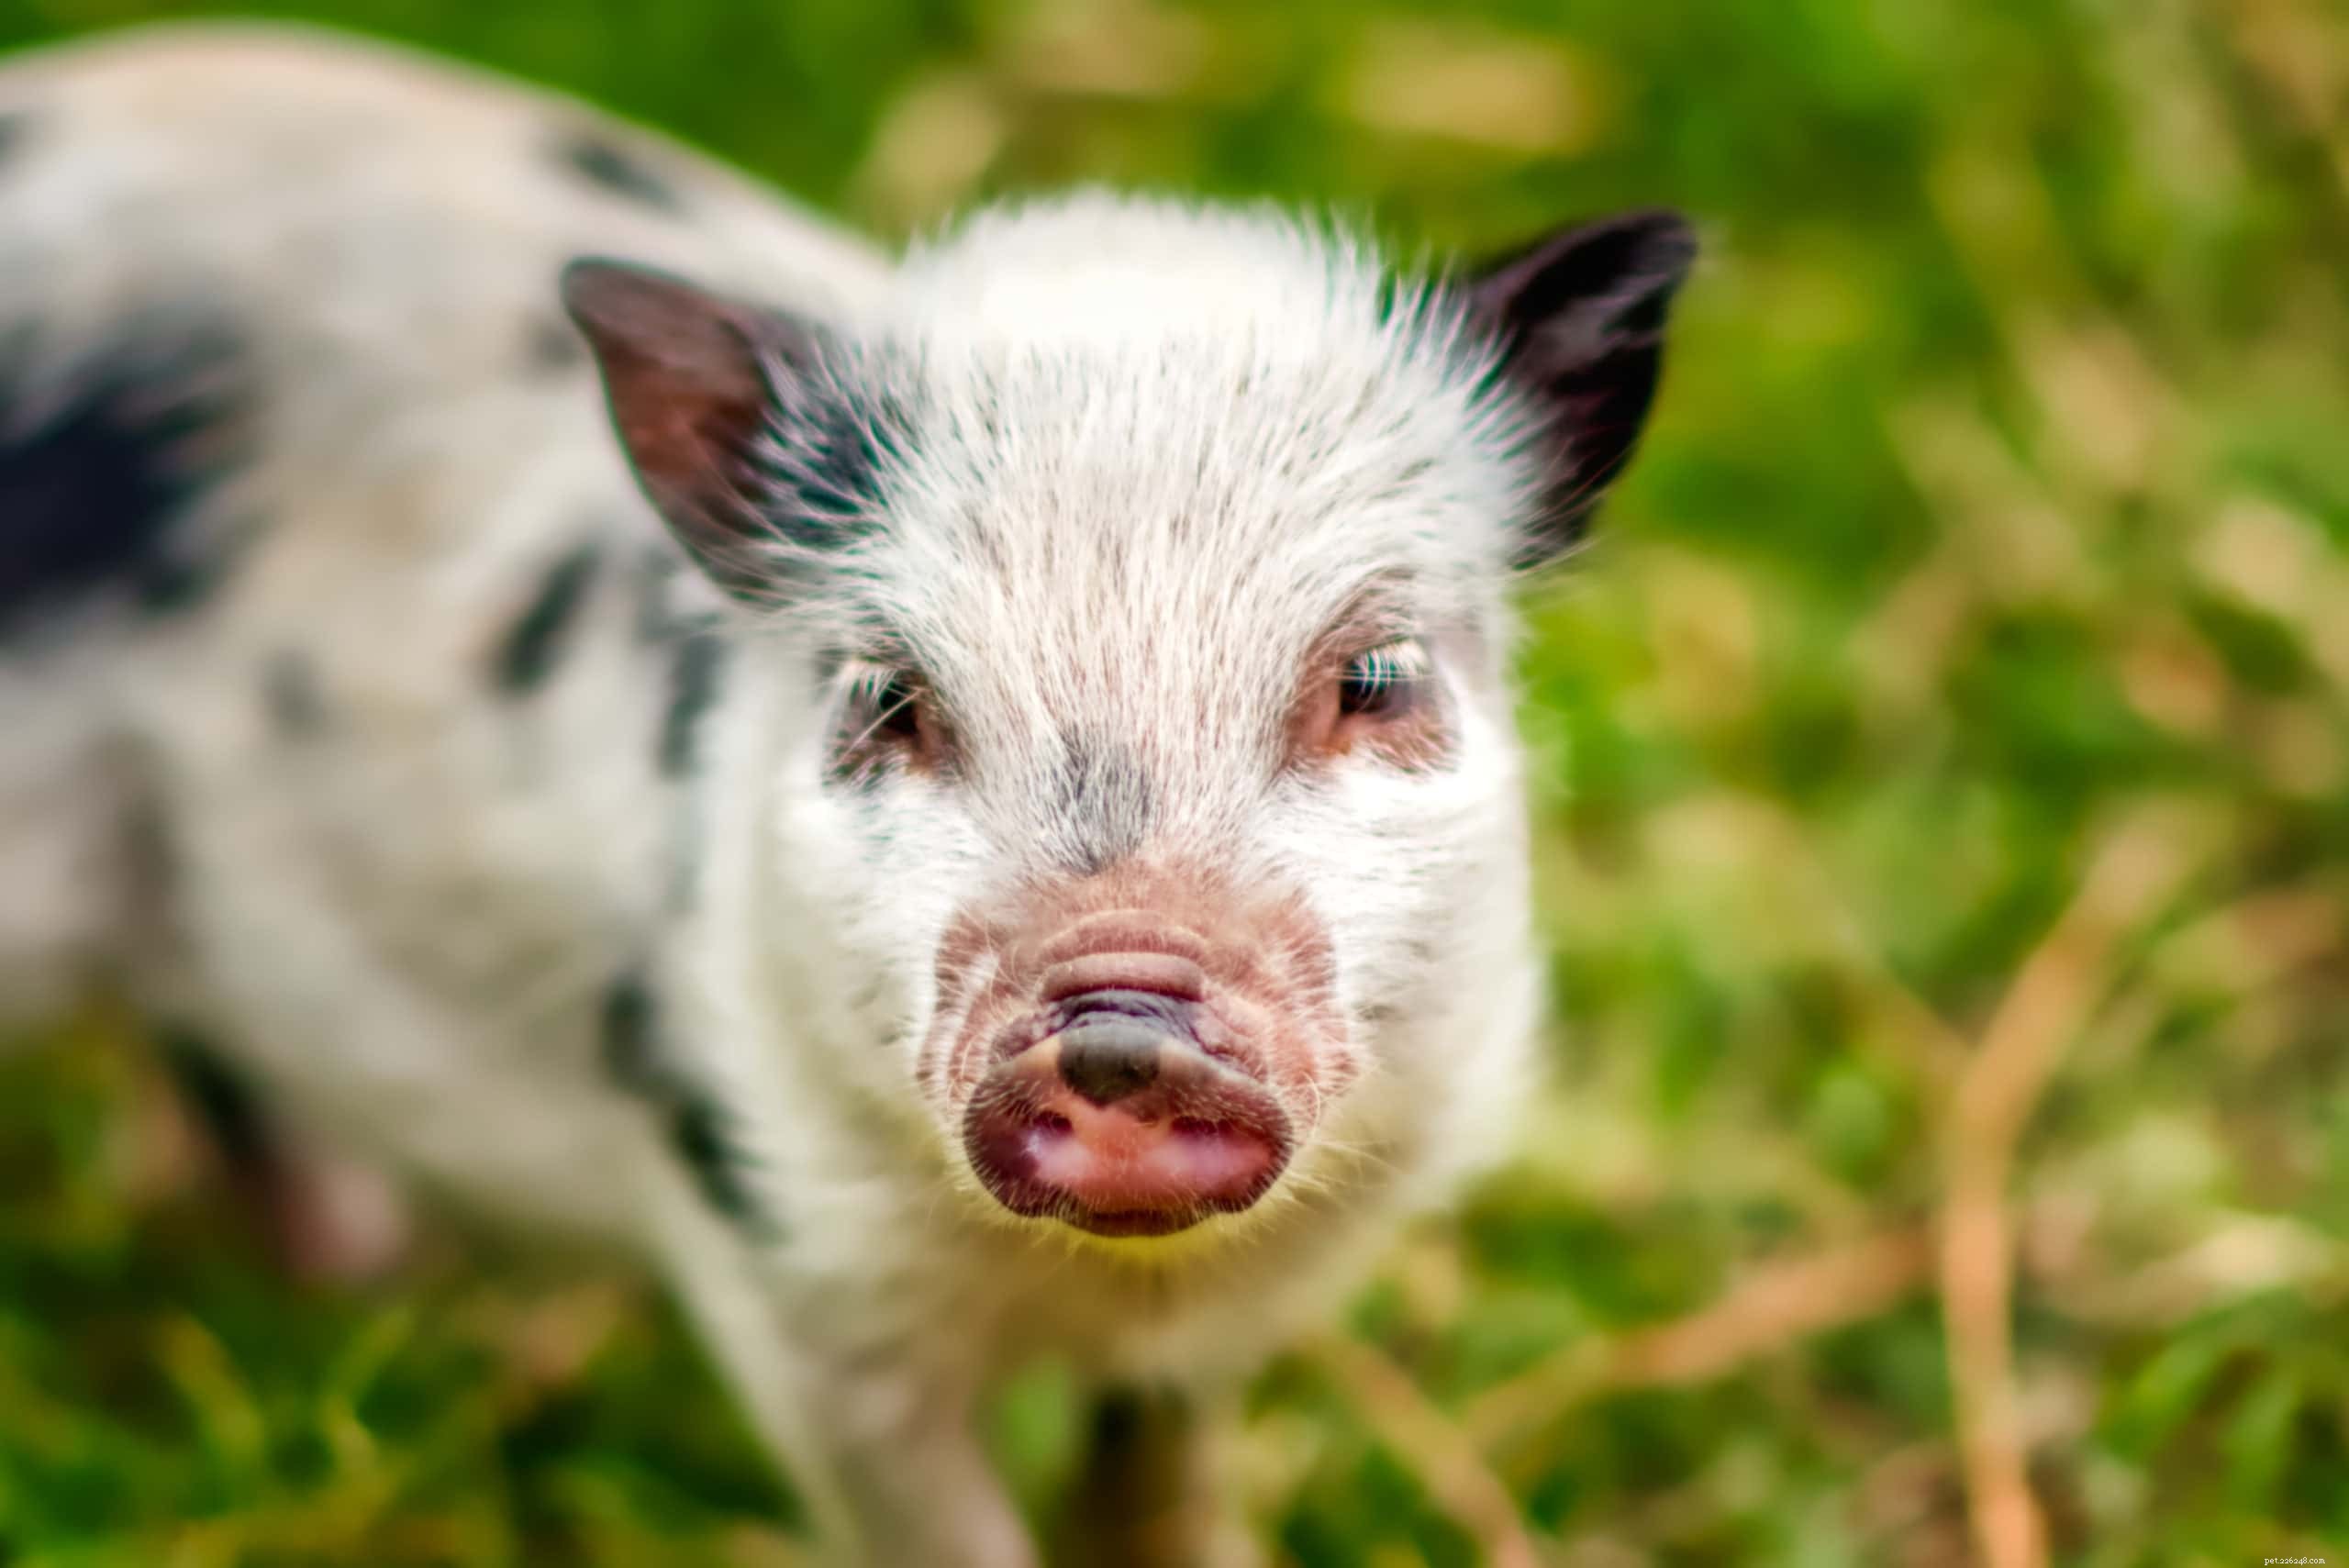 애완용 미니 돼지의 수명은 얼마나 됩니까? 찻잔 돼지 평균 수명 데이터 및 사실